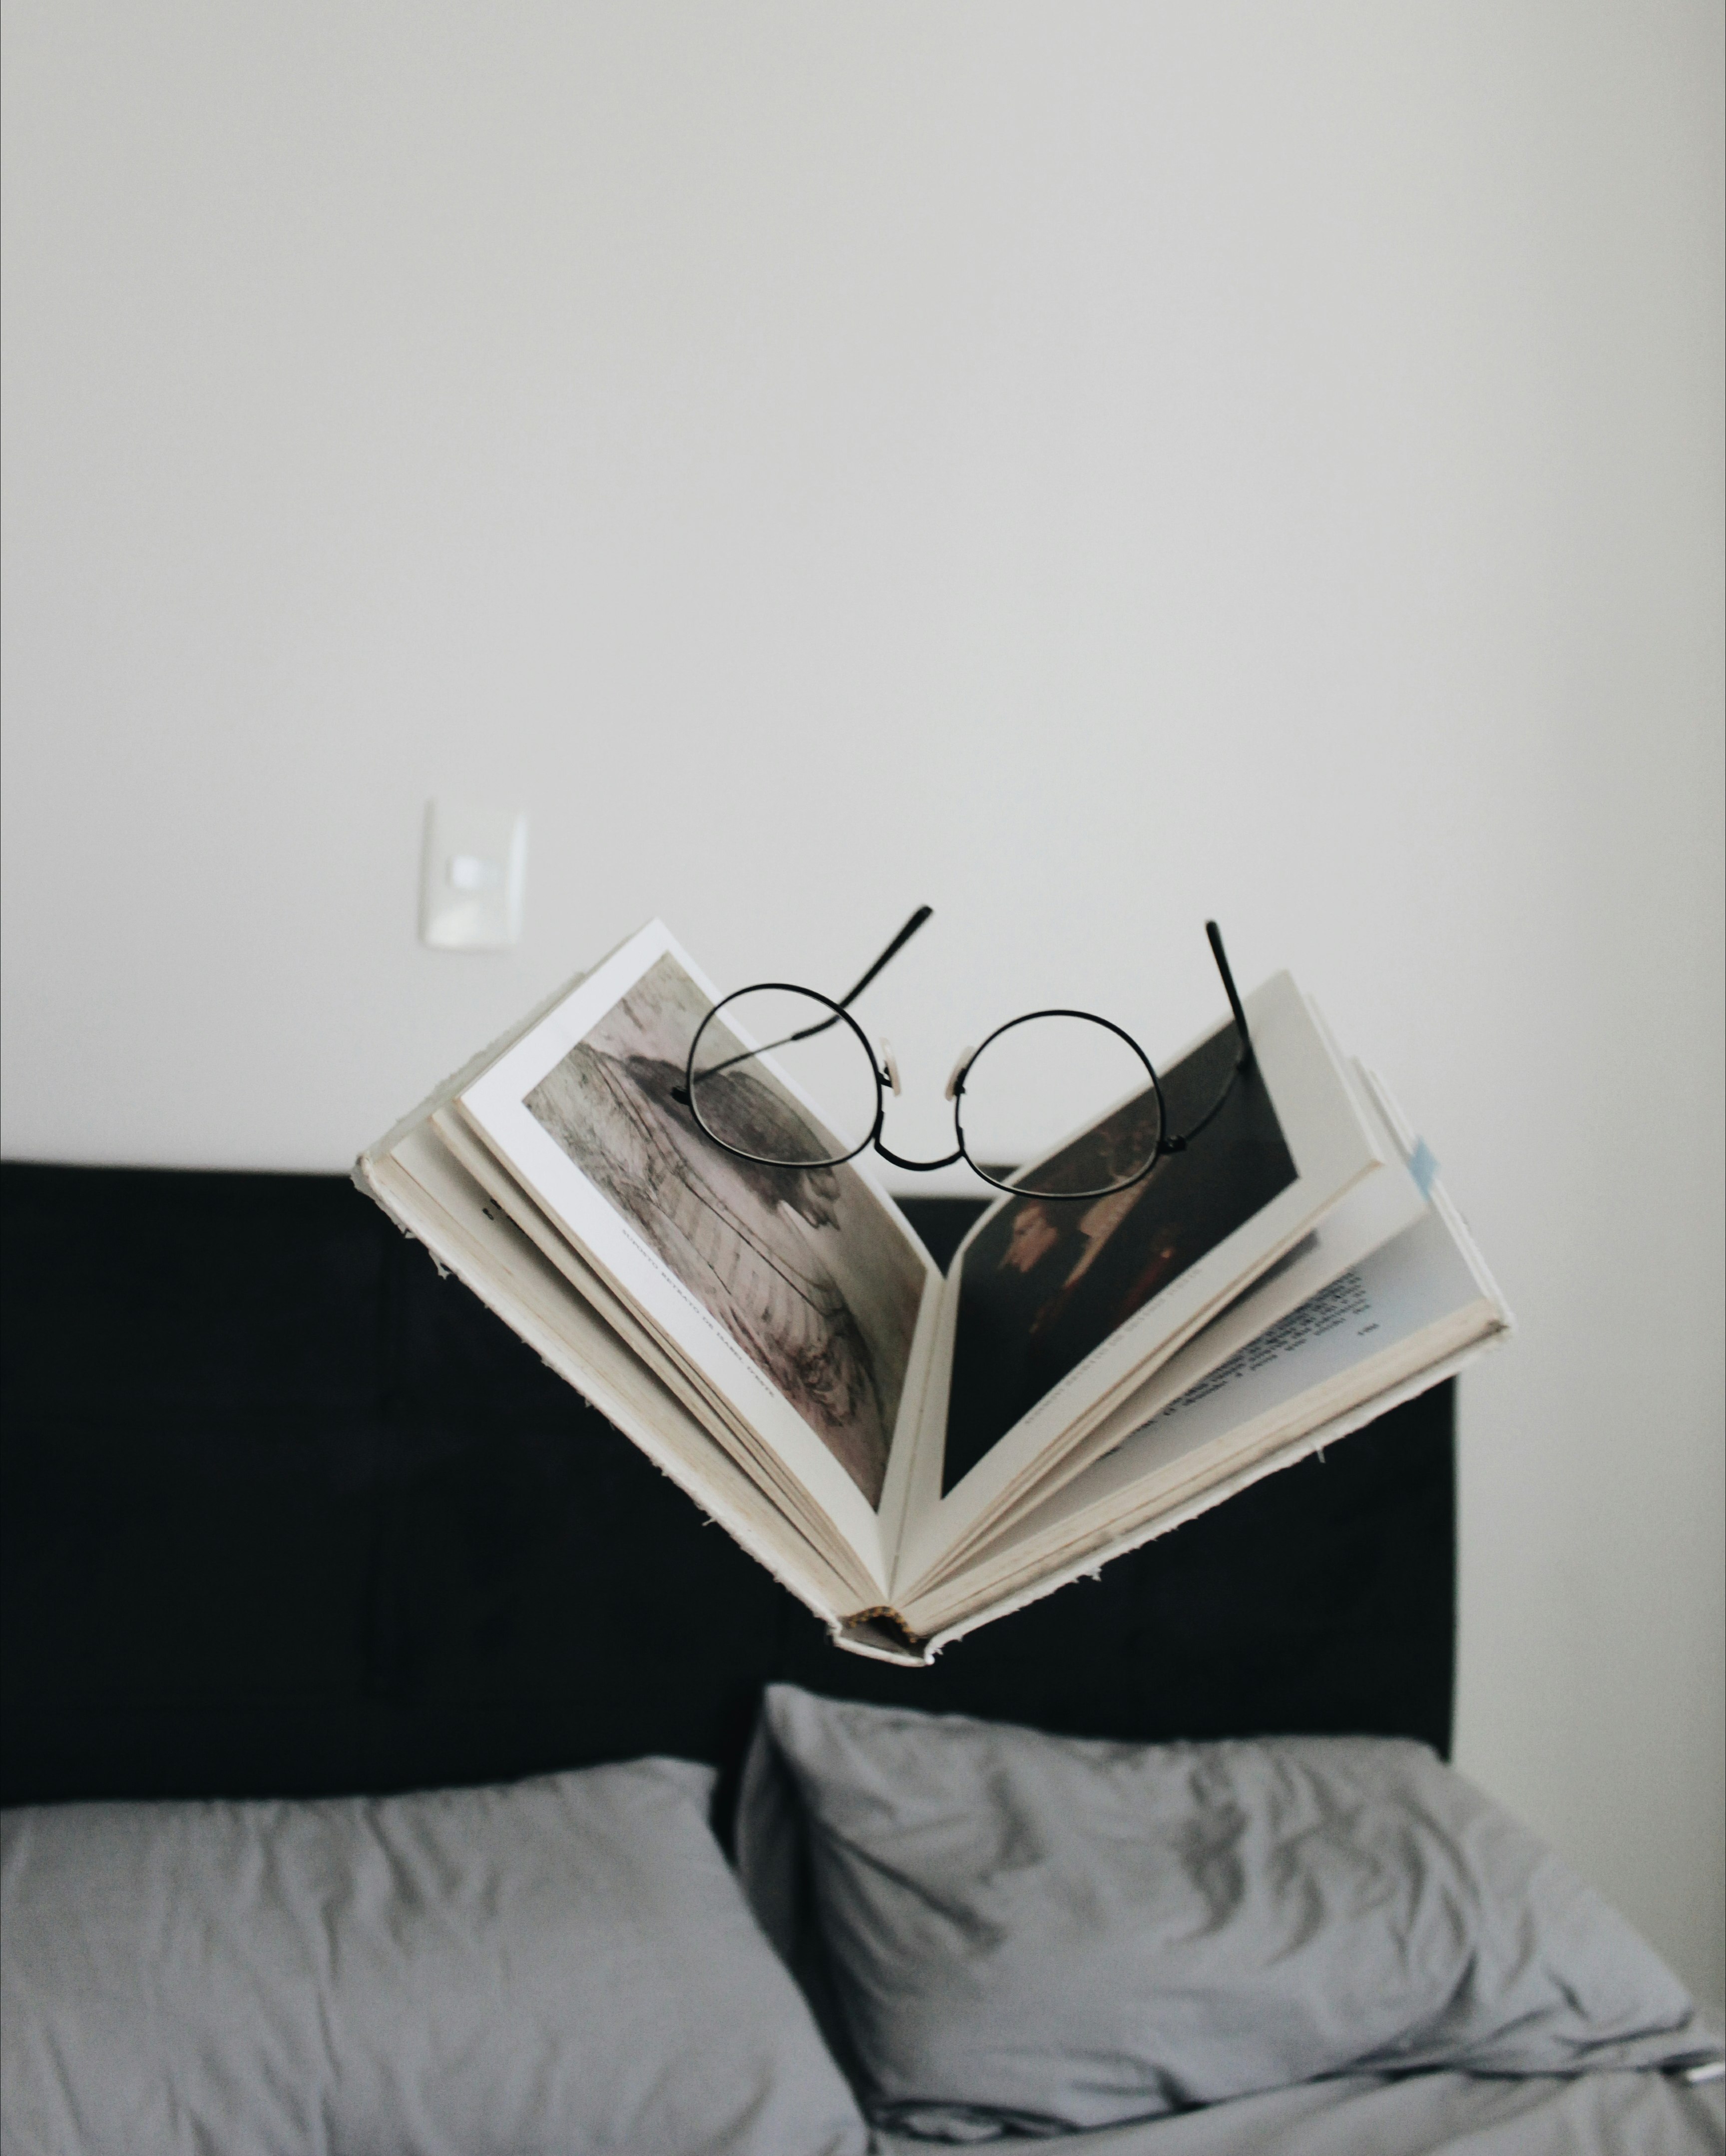 black framed eyeglasses between opened book